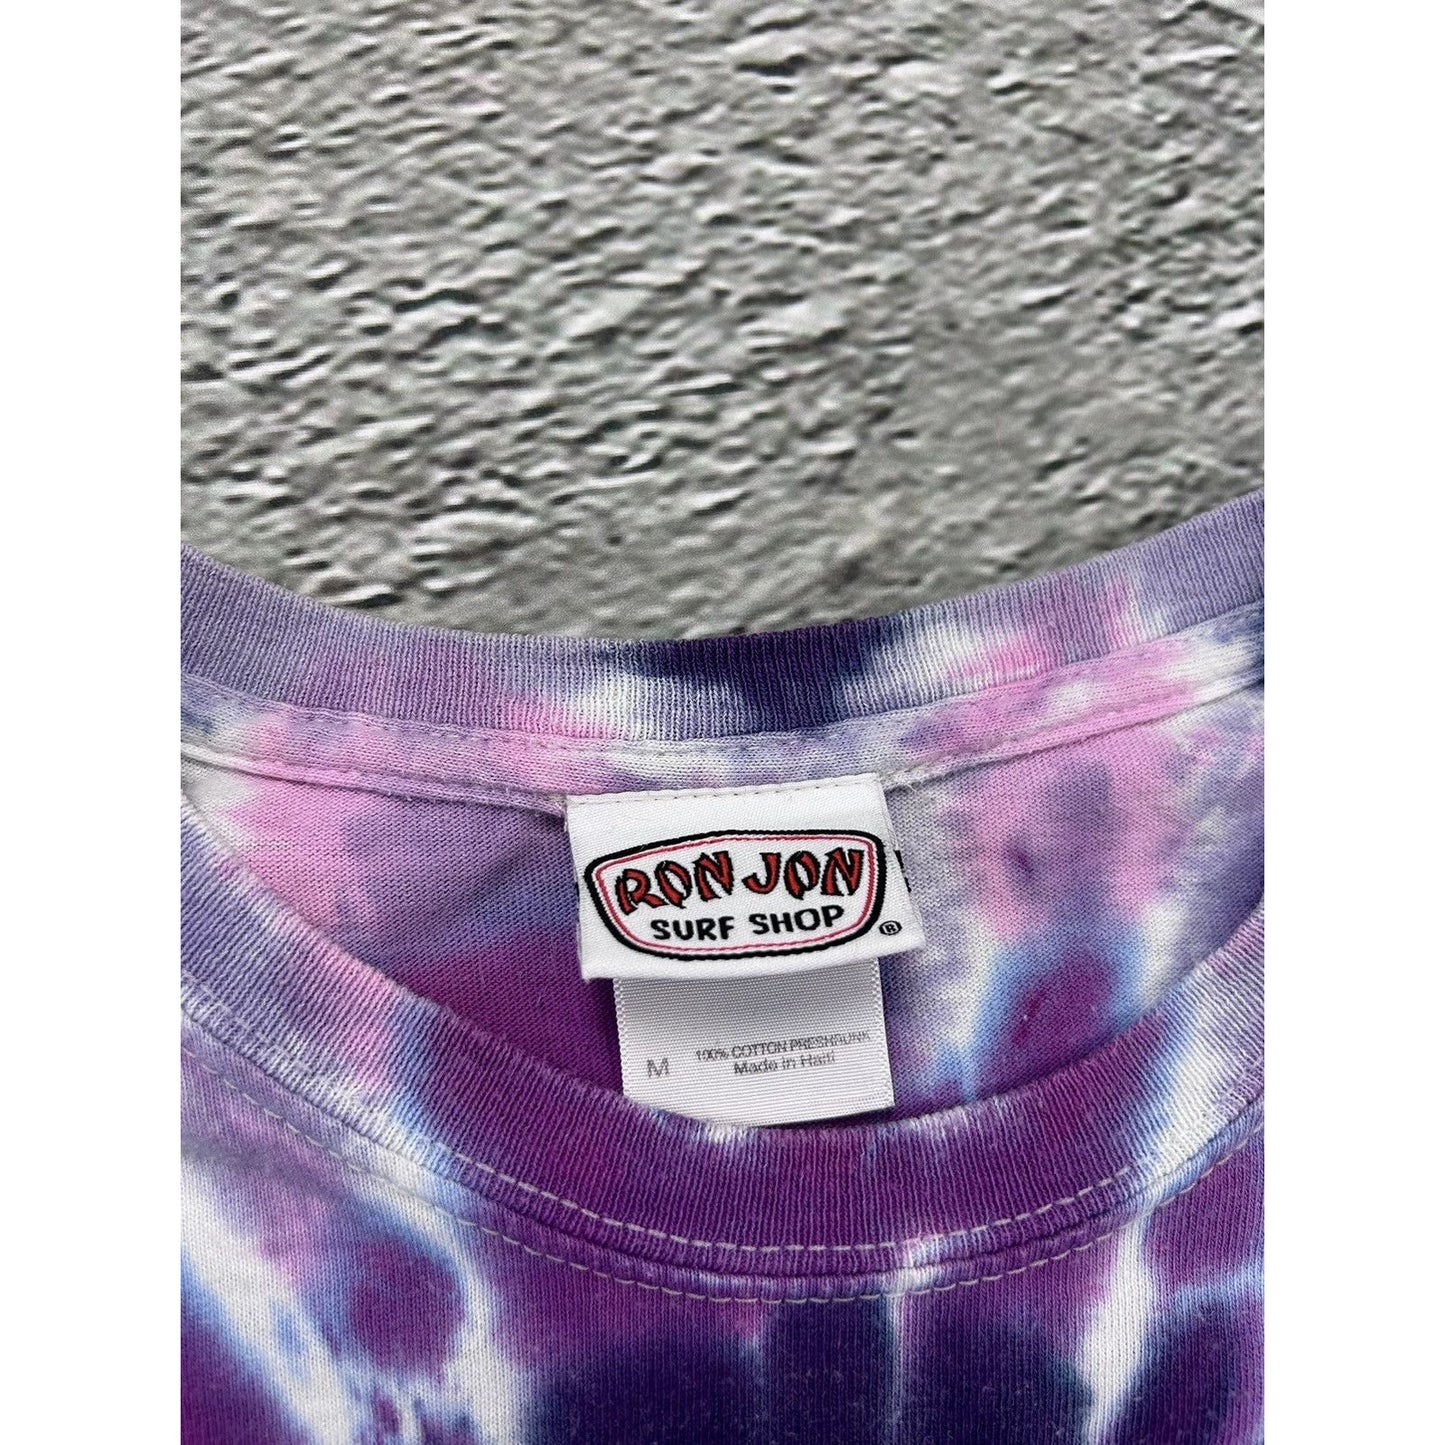 Vintage Official Ron Jon Surf Shop T-shirt Tie Dye purple